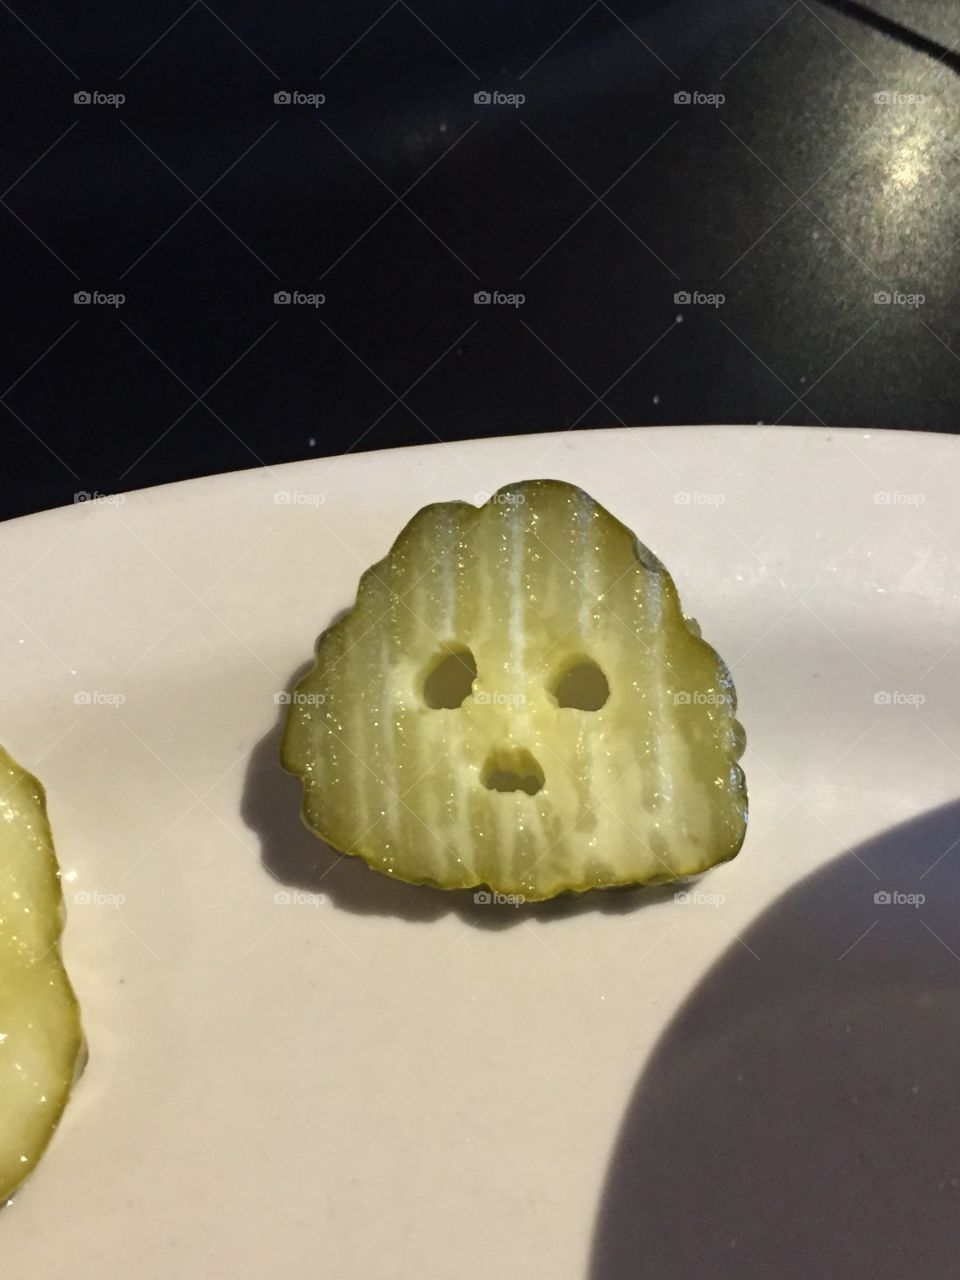 Pickle looks surprised 